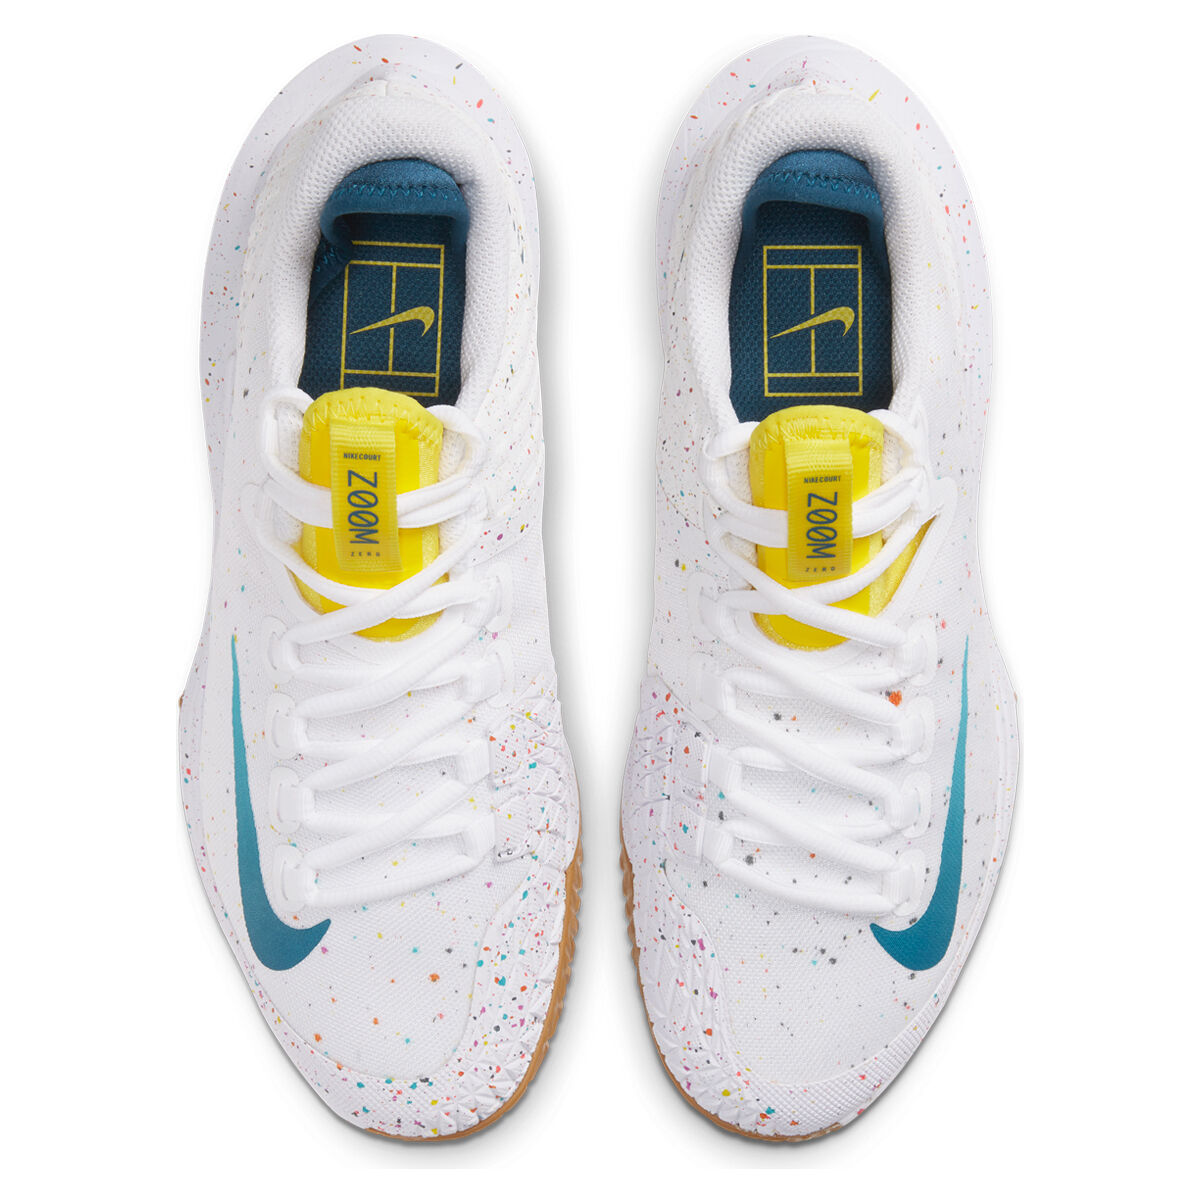 saints tennis shoes